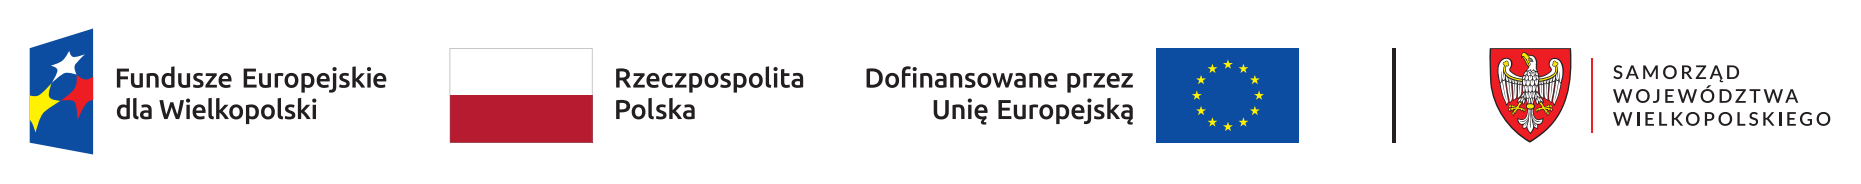 Fundusze Europejskie dla Wielkopolski, Rzeczypospolita Polska, Dofinansowanie przez Unię Europejską, Samorząd Województwa Wielkopolskiego